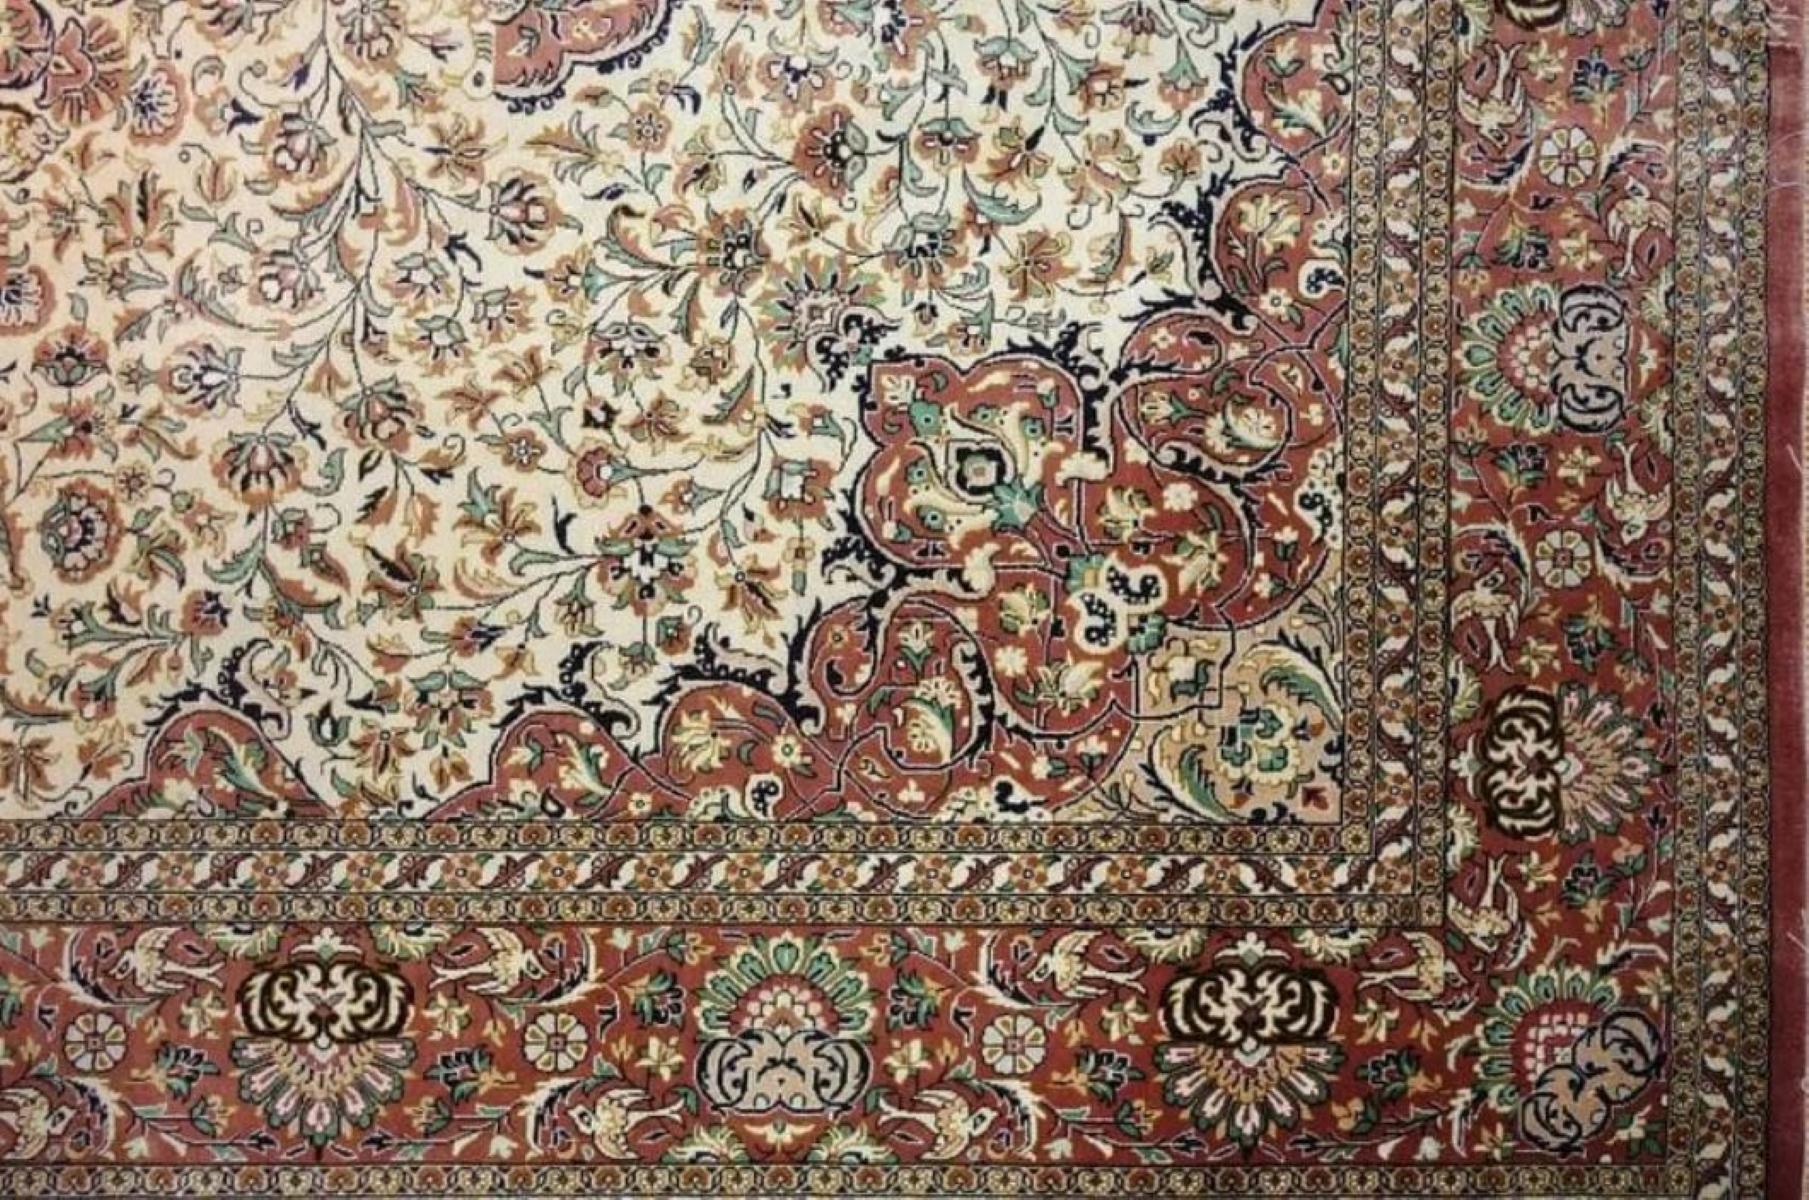 Très beau tapis persan Qum 700 noeuds par pouce, Taille 7.10 x 5.2 Iran Qum Mahlosi Soie et Fondation de soie. Environ 4 000 000 de nœuds noués à la main, un par un. Il faut 3 ans pour réaliser cette œuvre d'art.